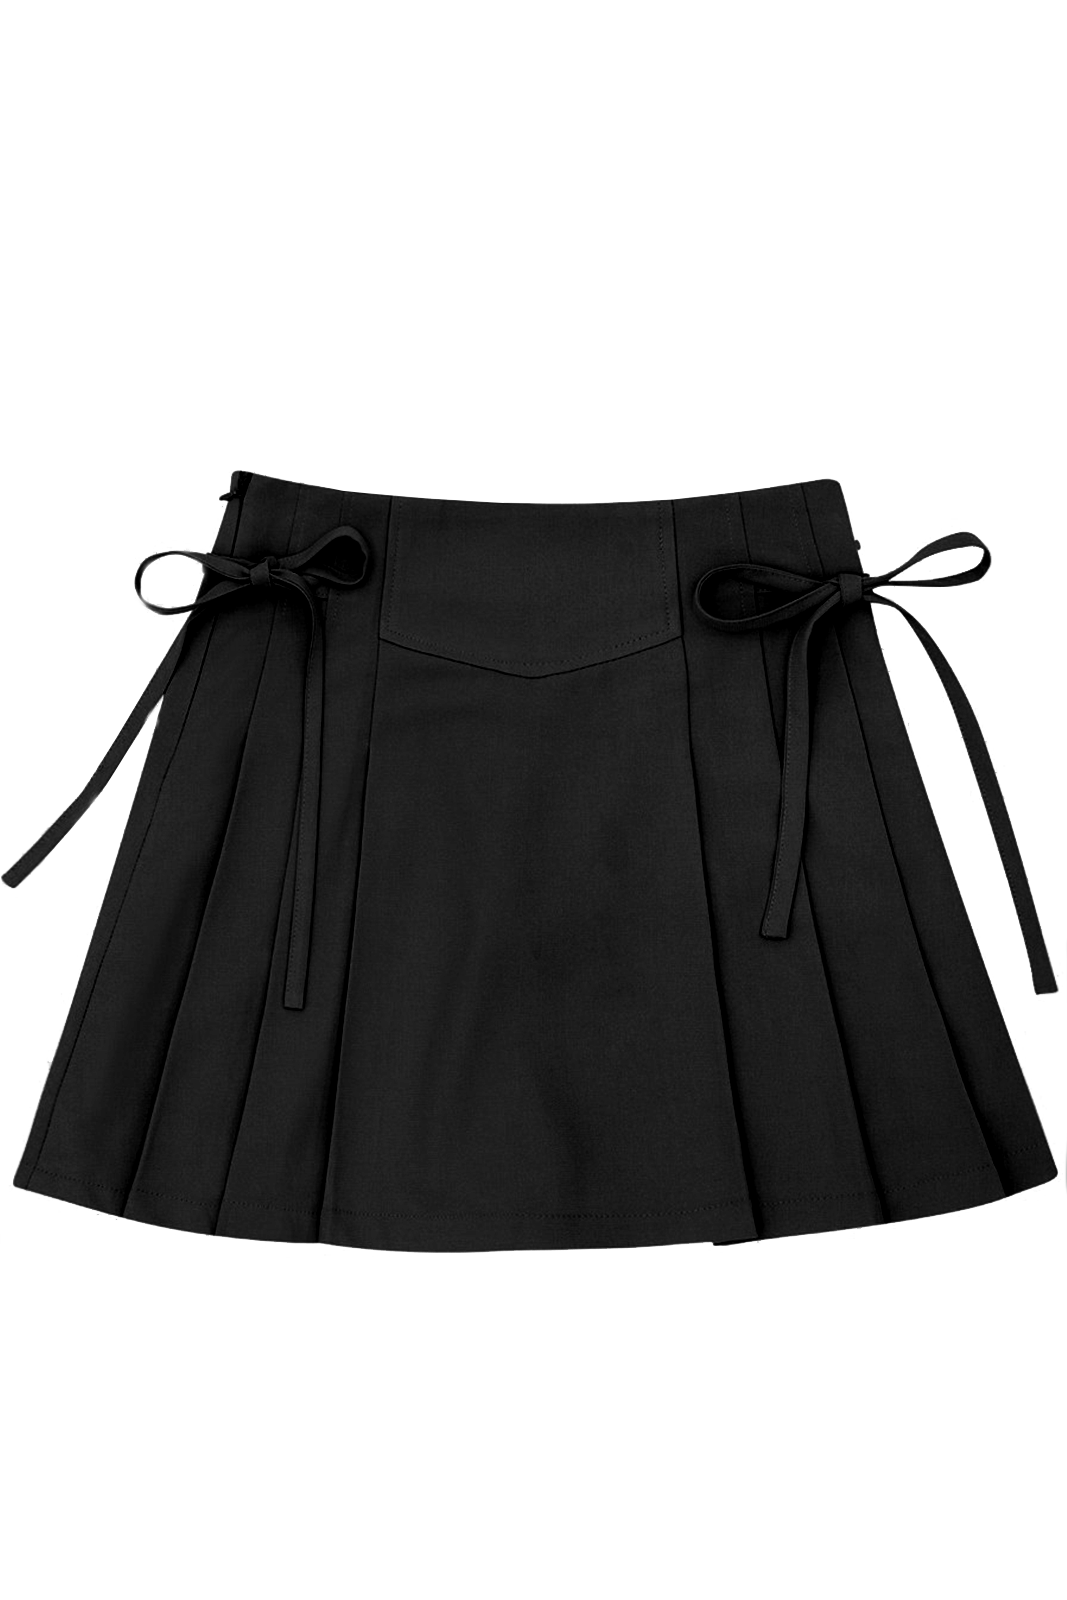 불용원단) ribbon pleated skirt-black